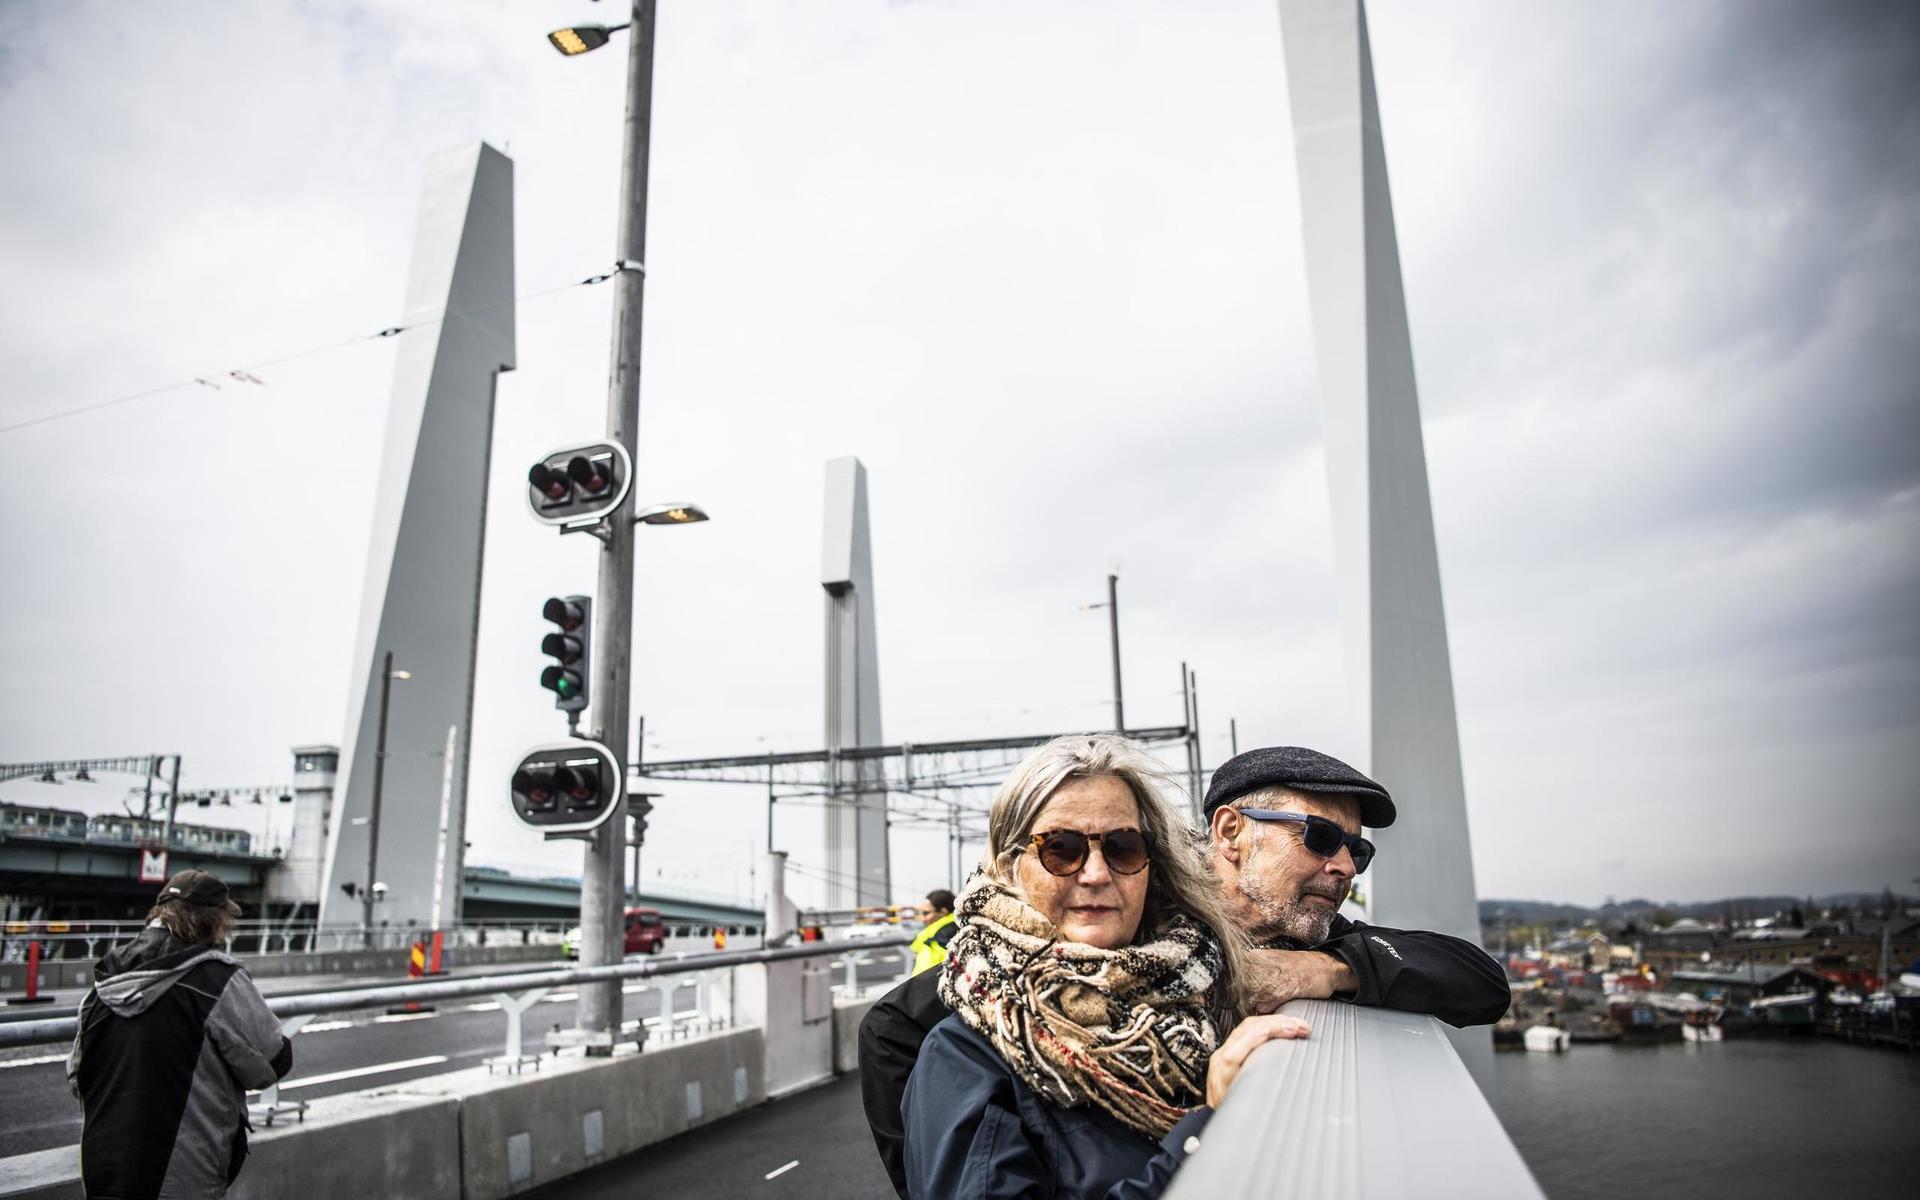 Många göteborgare passade på att kolla in bron vid invigningen. Här ser vi Charlotte Gustafsson och Ove Pedersen.